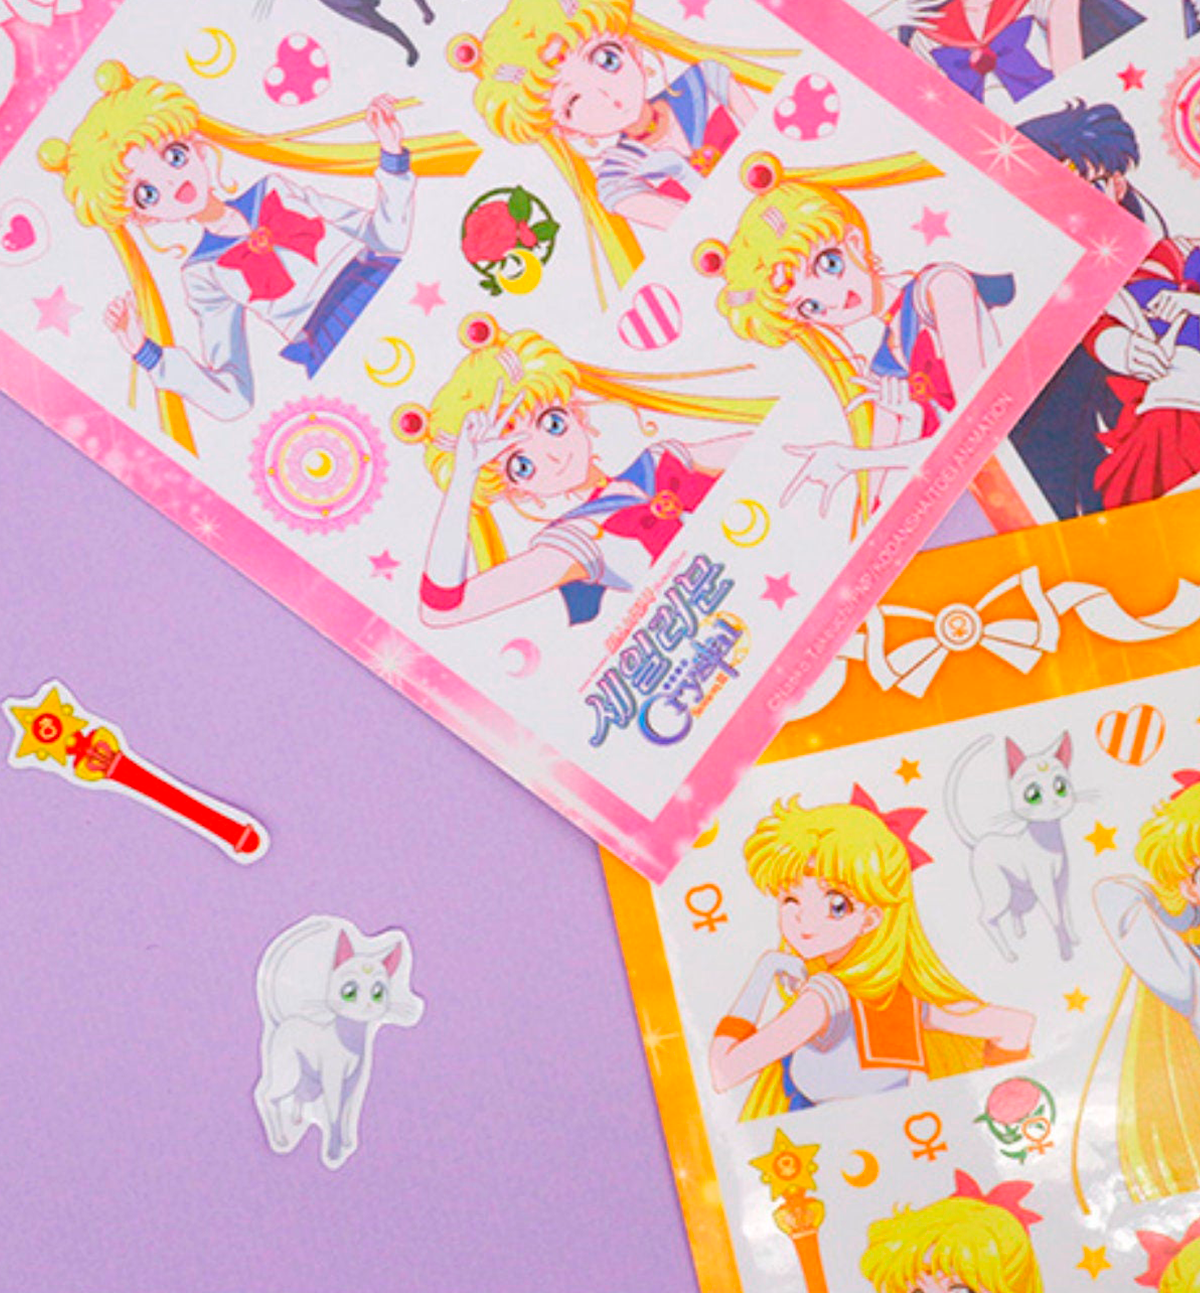 Sailor Moon Stamp Sticker